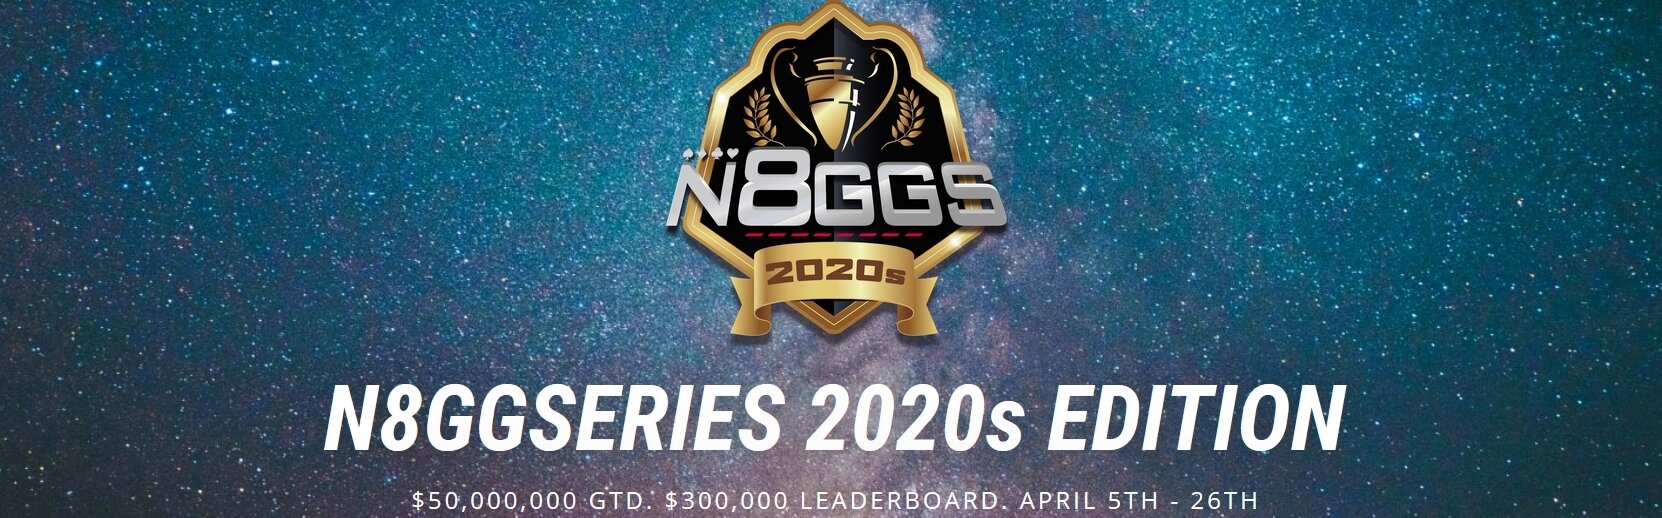 Гарантия 50M$  в «Good Game Series 2020s» - старт уже на этой неделе.